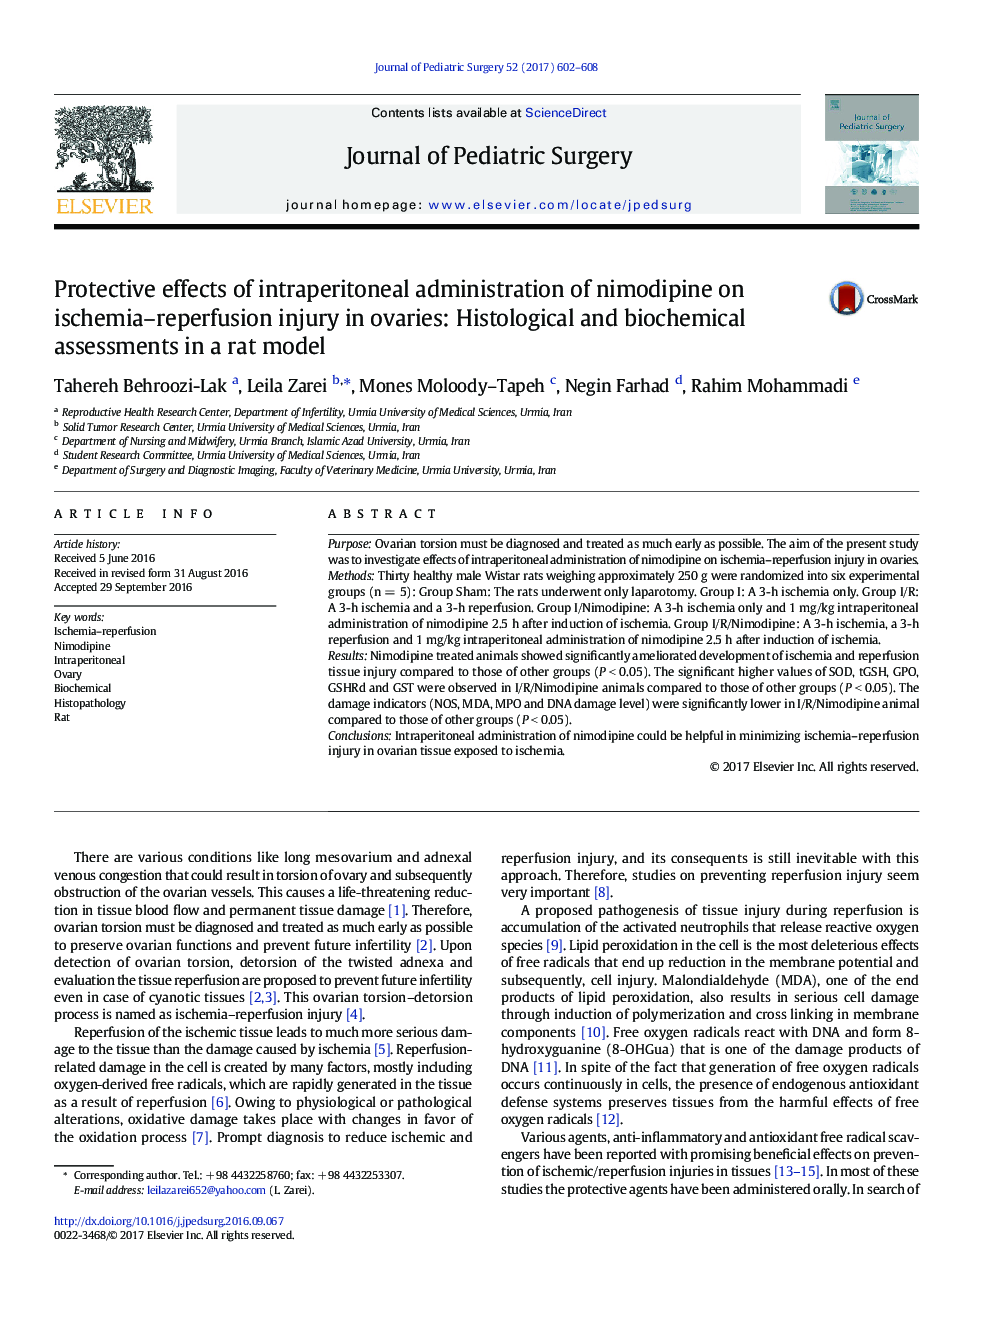 اثر اصلی مقاله ای از تجویز داخل صفاقی نامیدیپین بر آسیب های ایسکمی-رپرفیوژن در تخمدان: ارزیابی های هیستولوژیکی و بیوشیمیایی در یک مدل موش 